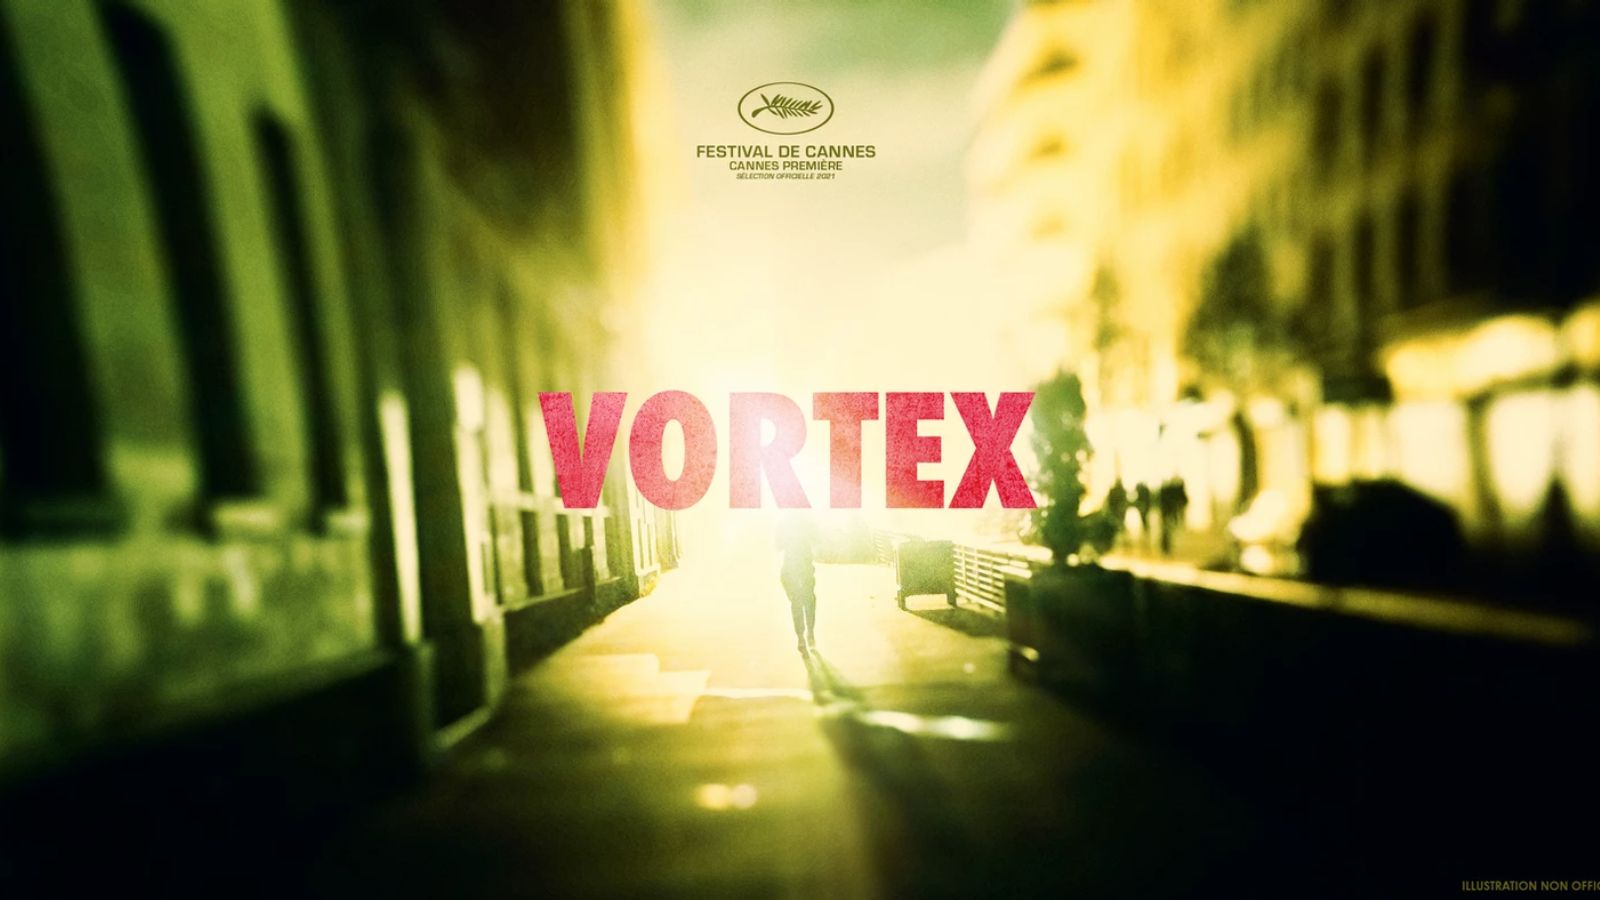 grafika zapowiadająca film „Vortex" / reż. Gaspar Noé